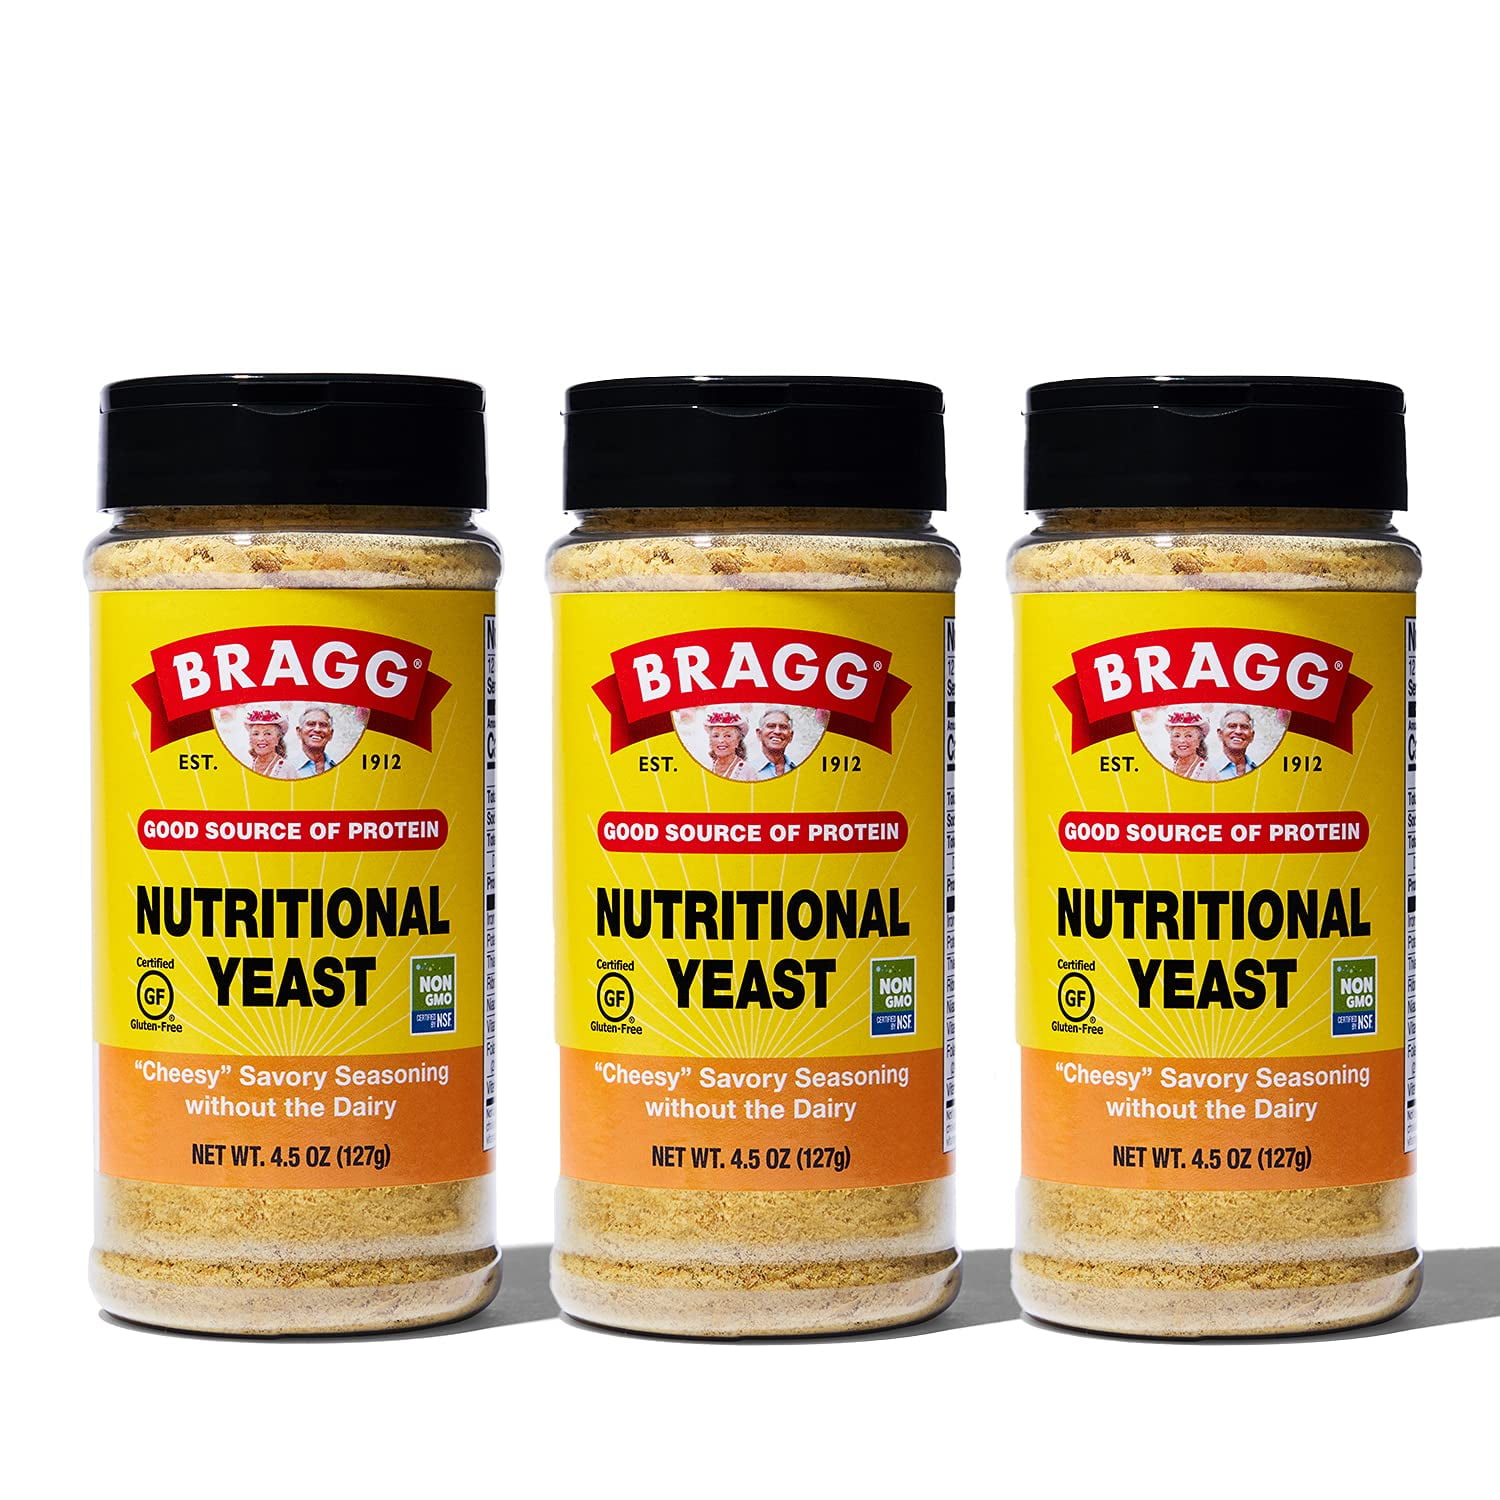 Bragg's Premium Nutritional Yeast Seasoning - Azure Standard